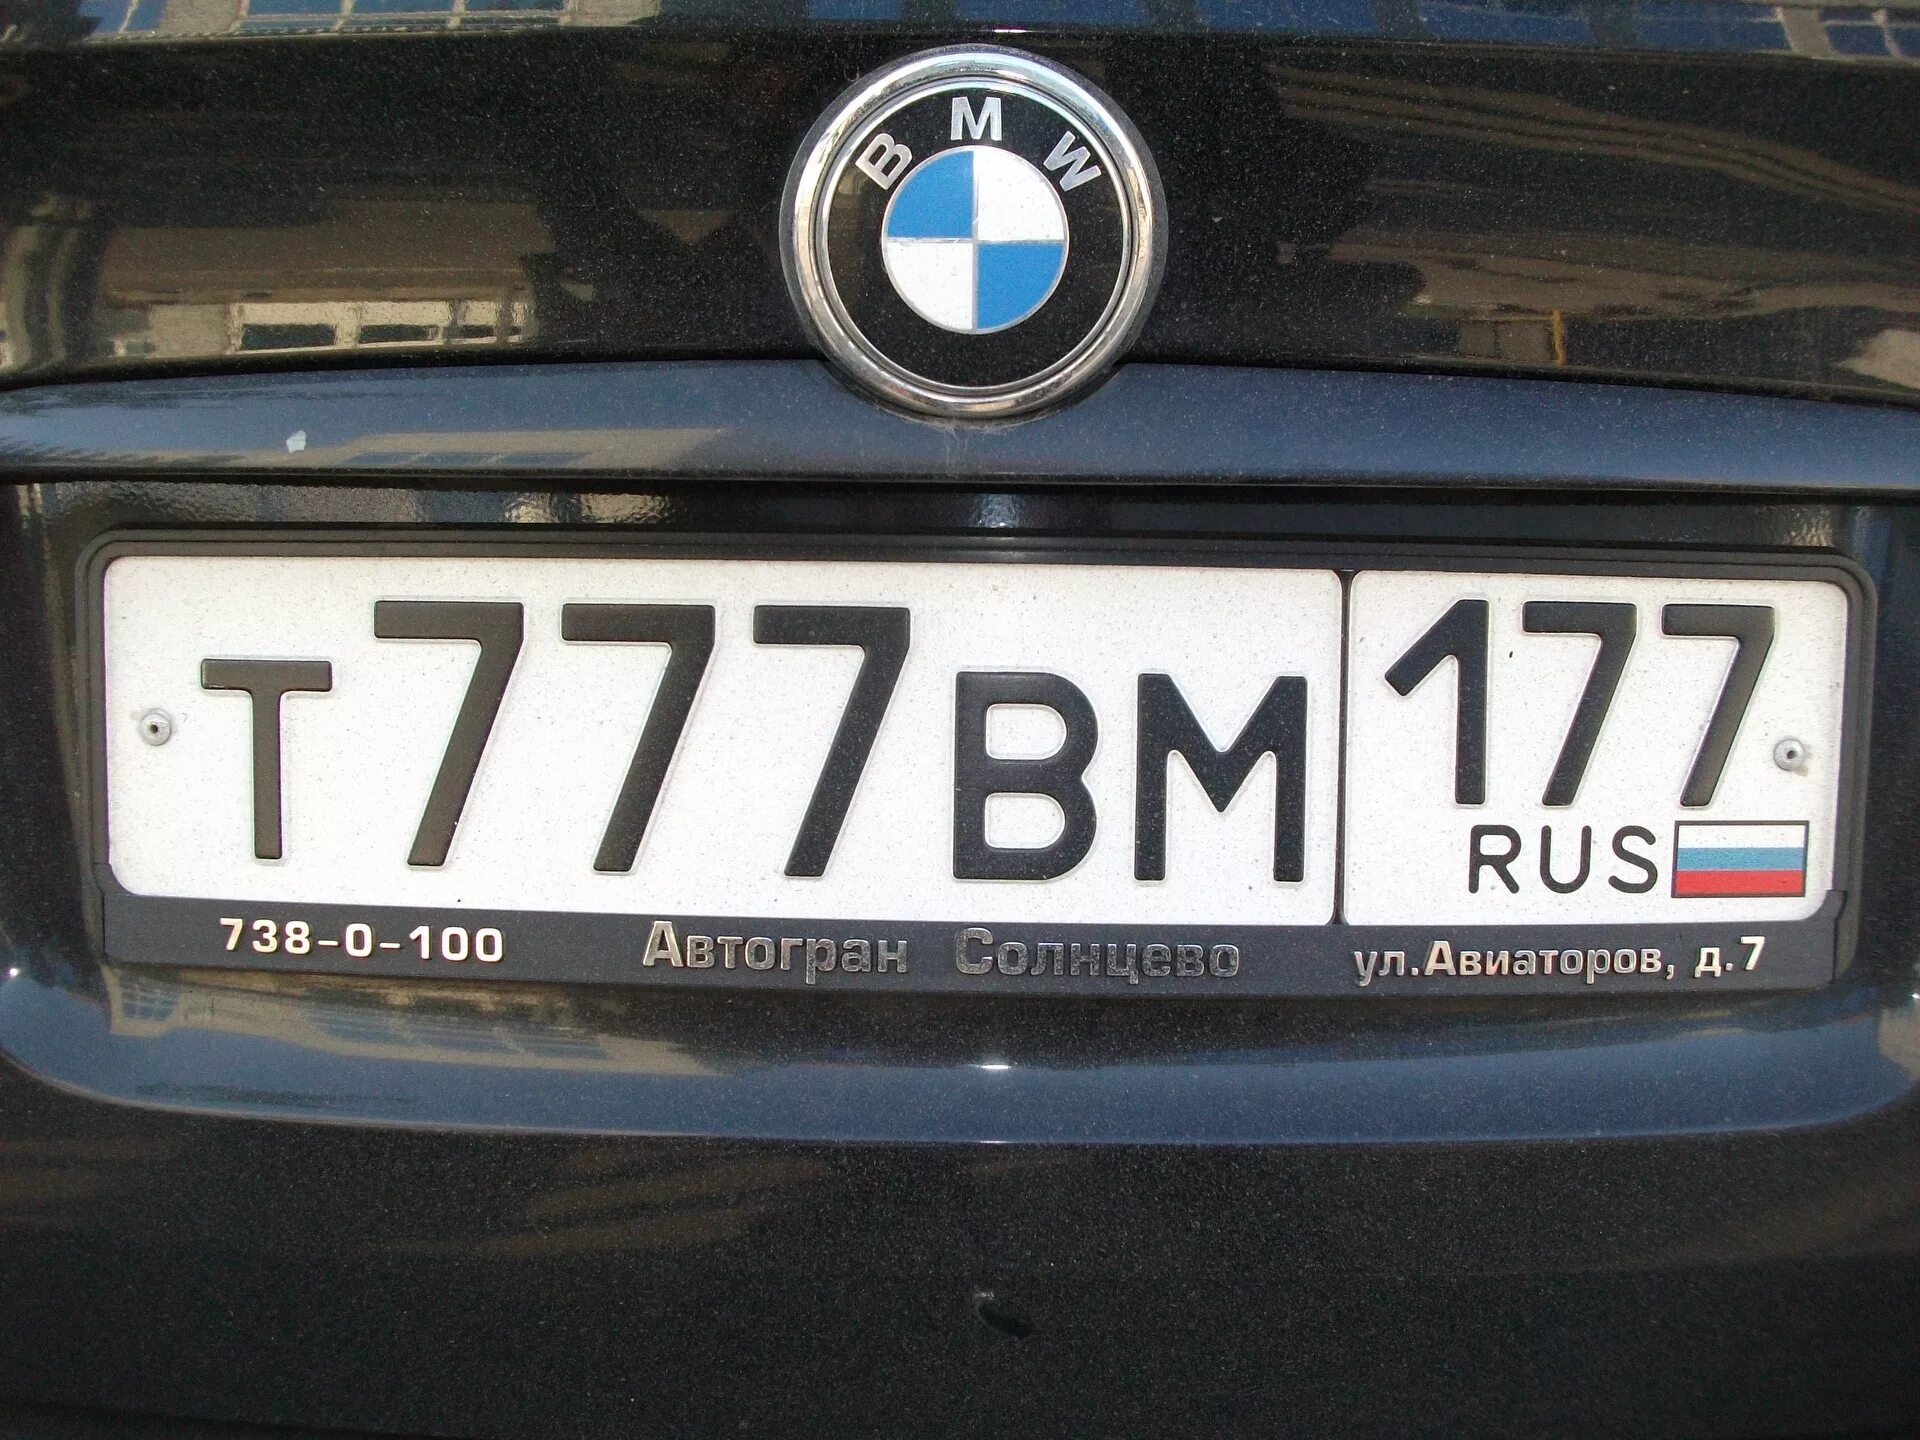 Номера в первом туре. Номера машин. Номерной знак автомобиля. Российские номера. Российские номера машин.